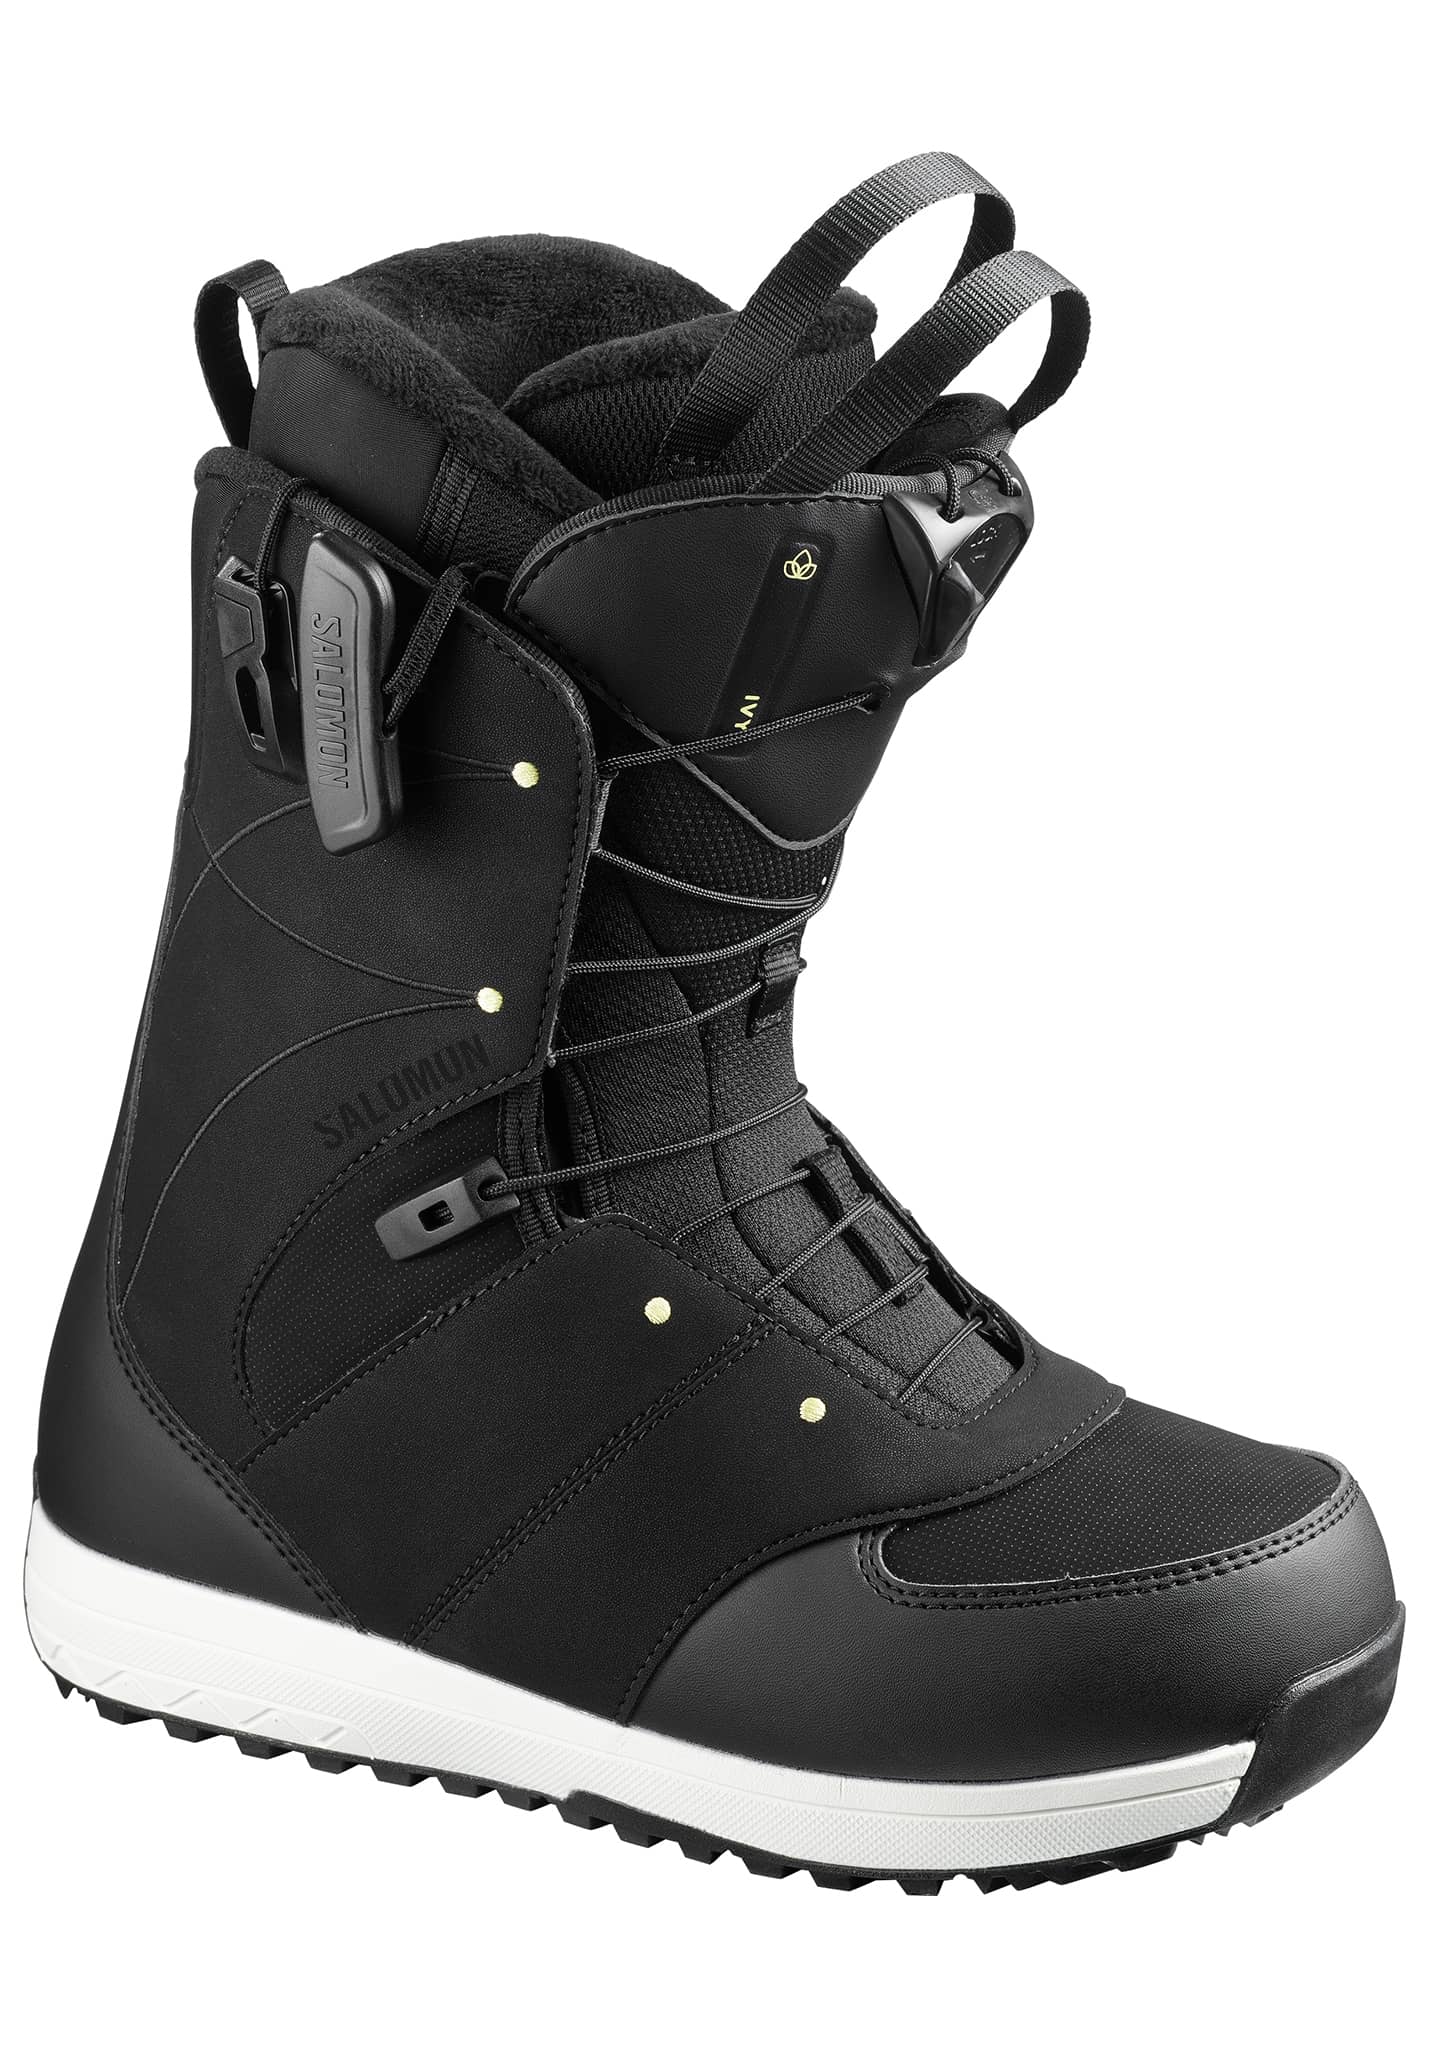 Salomon Ivy All Mountain Snowboard Boots schwarz/schwarz/helles kalkgelb 42